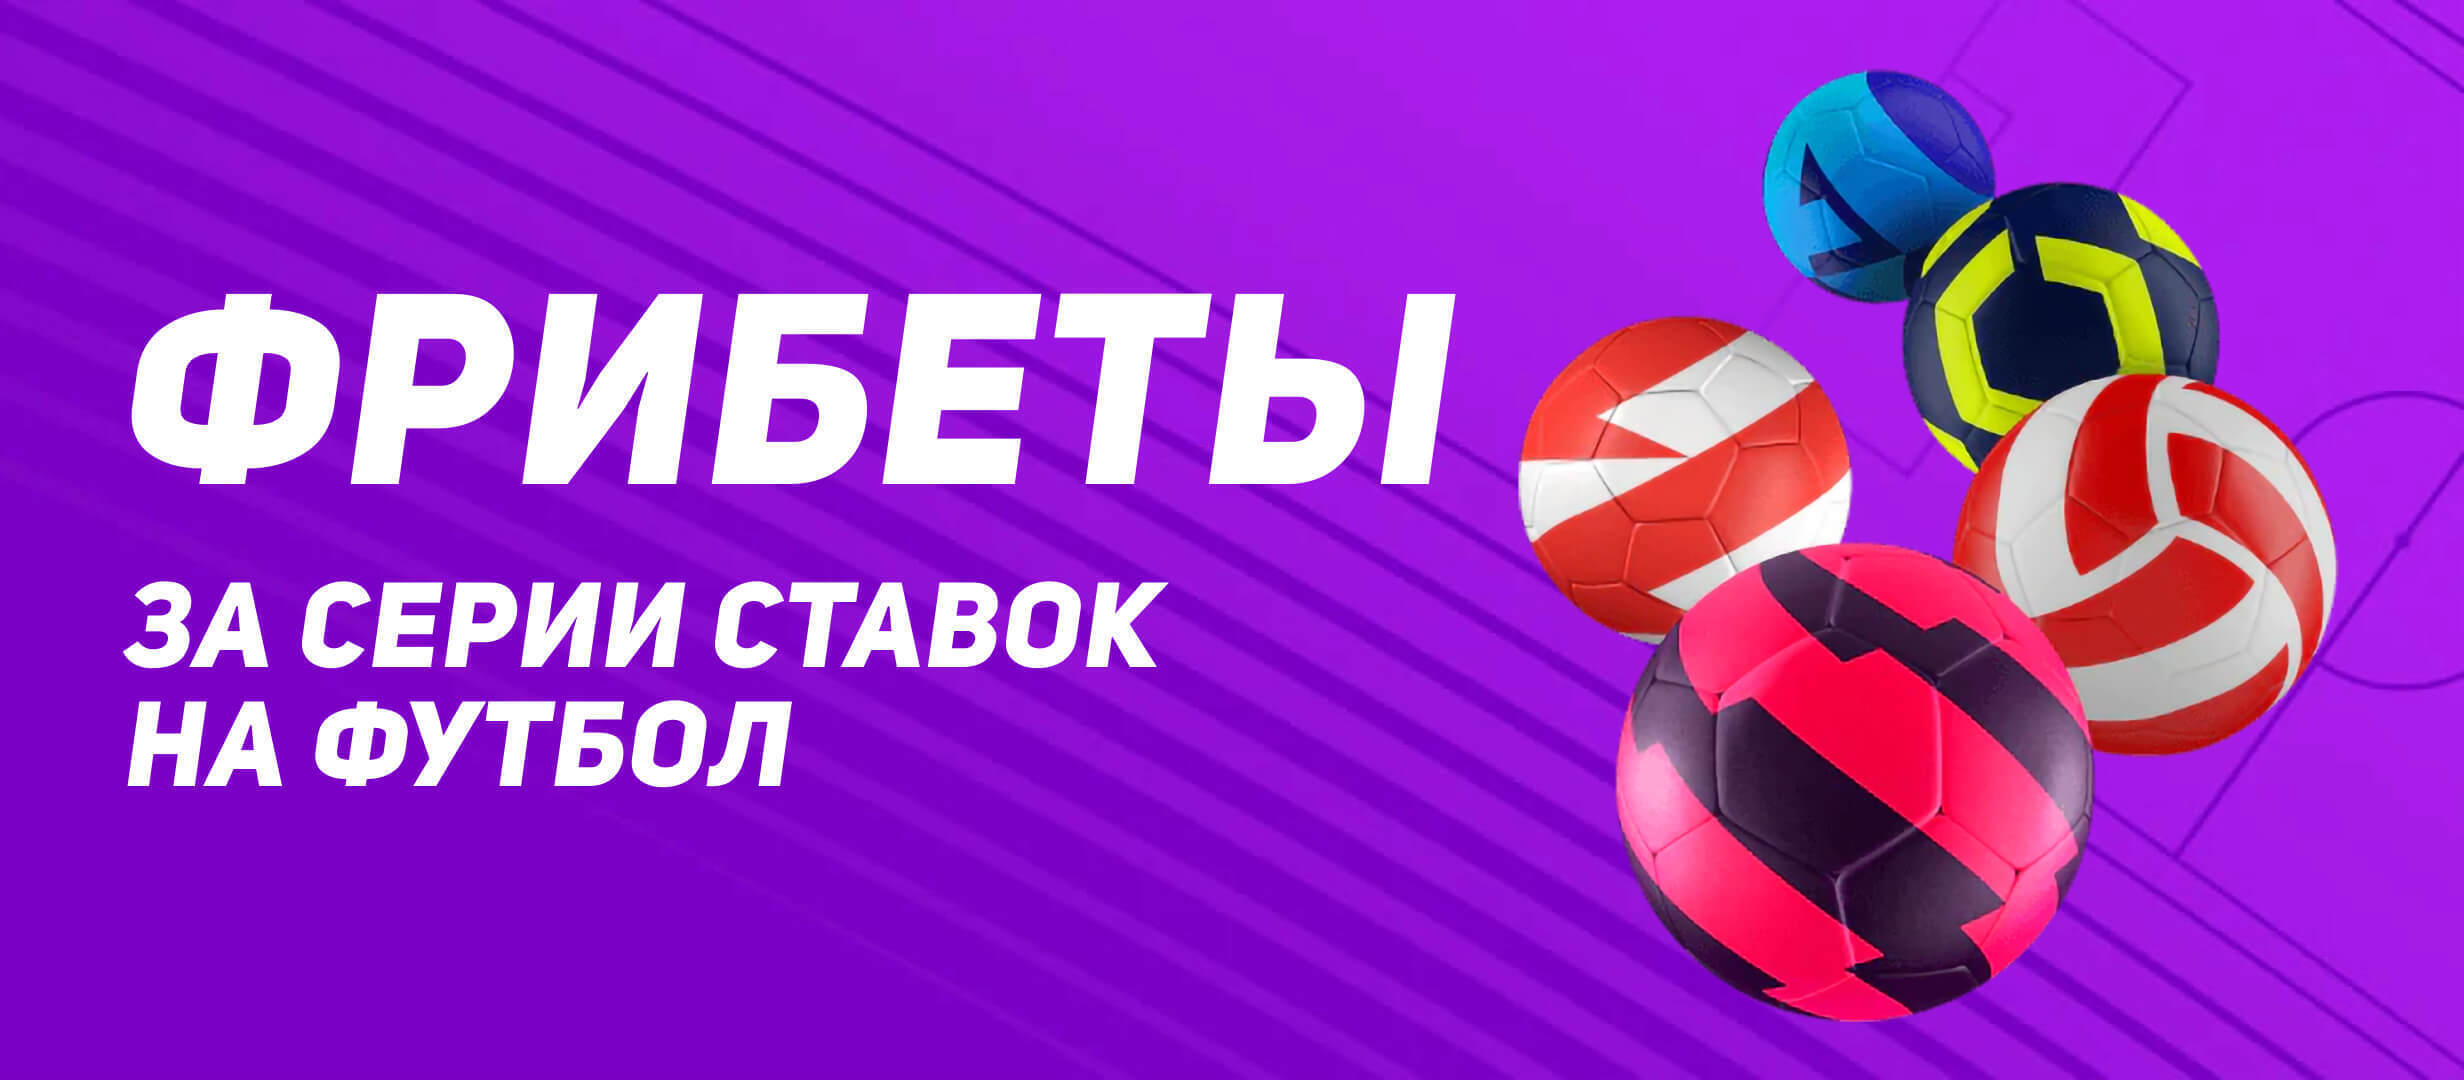 БК Леон начисляет фрибет до 2 500 рублей за ставки на европейский футбол